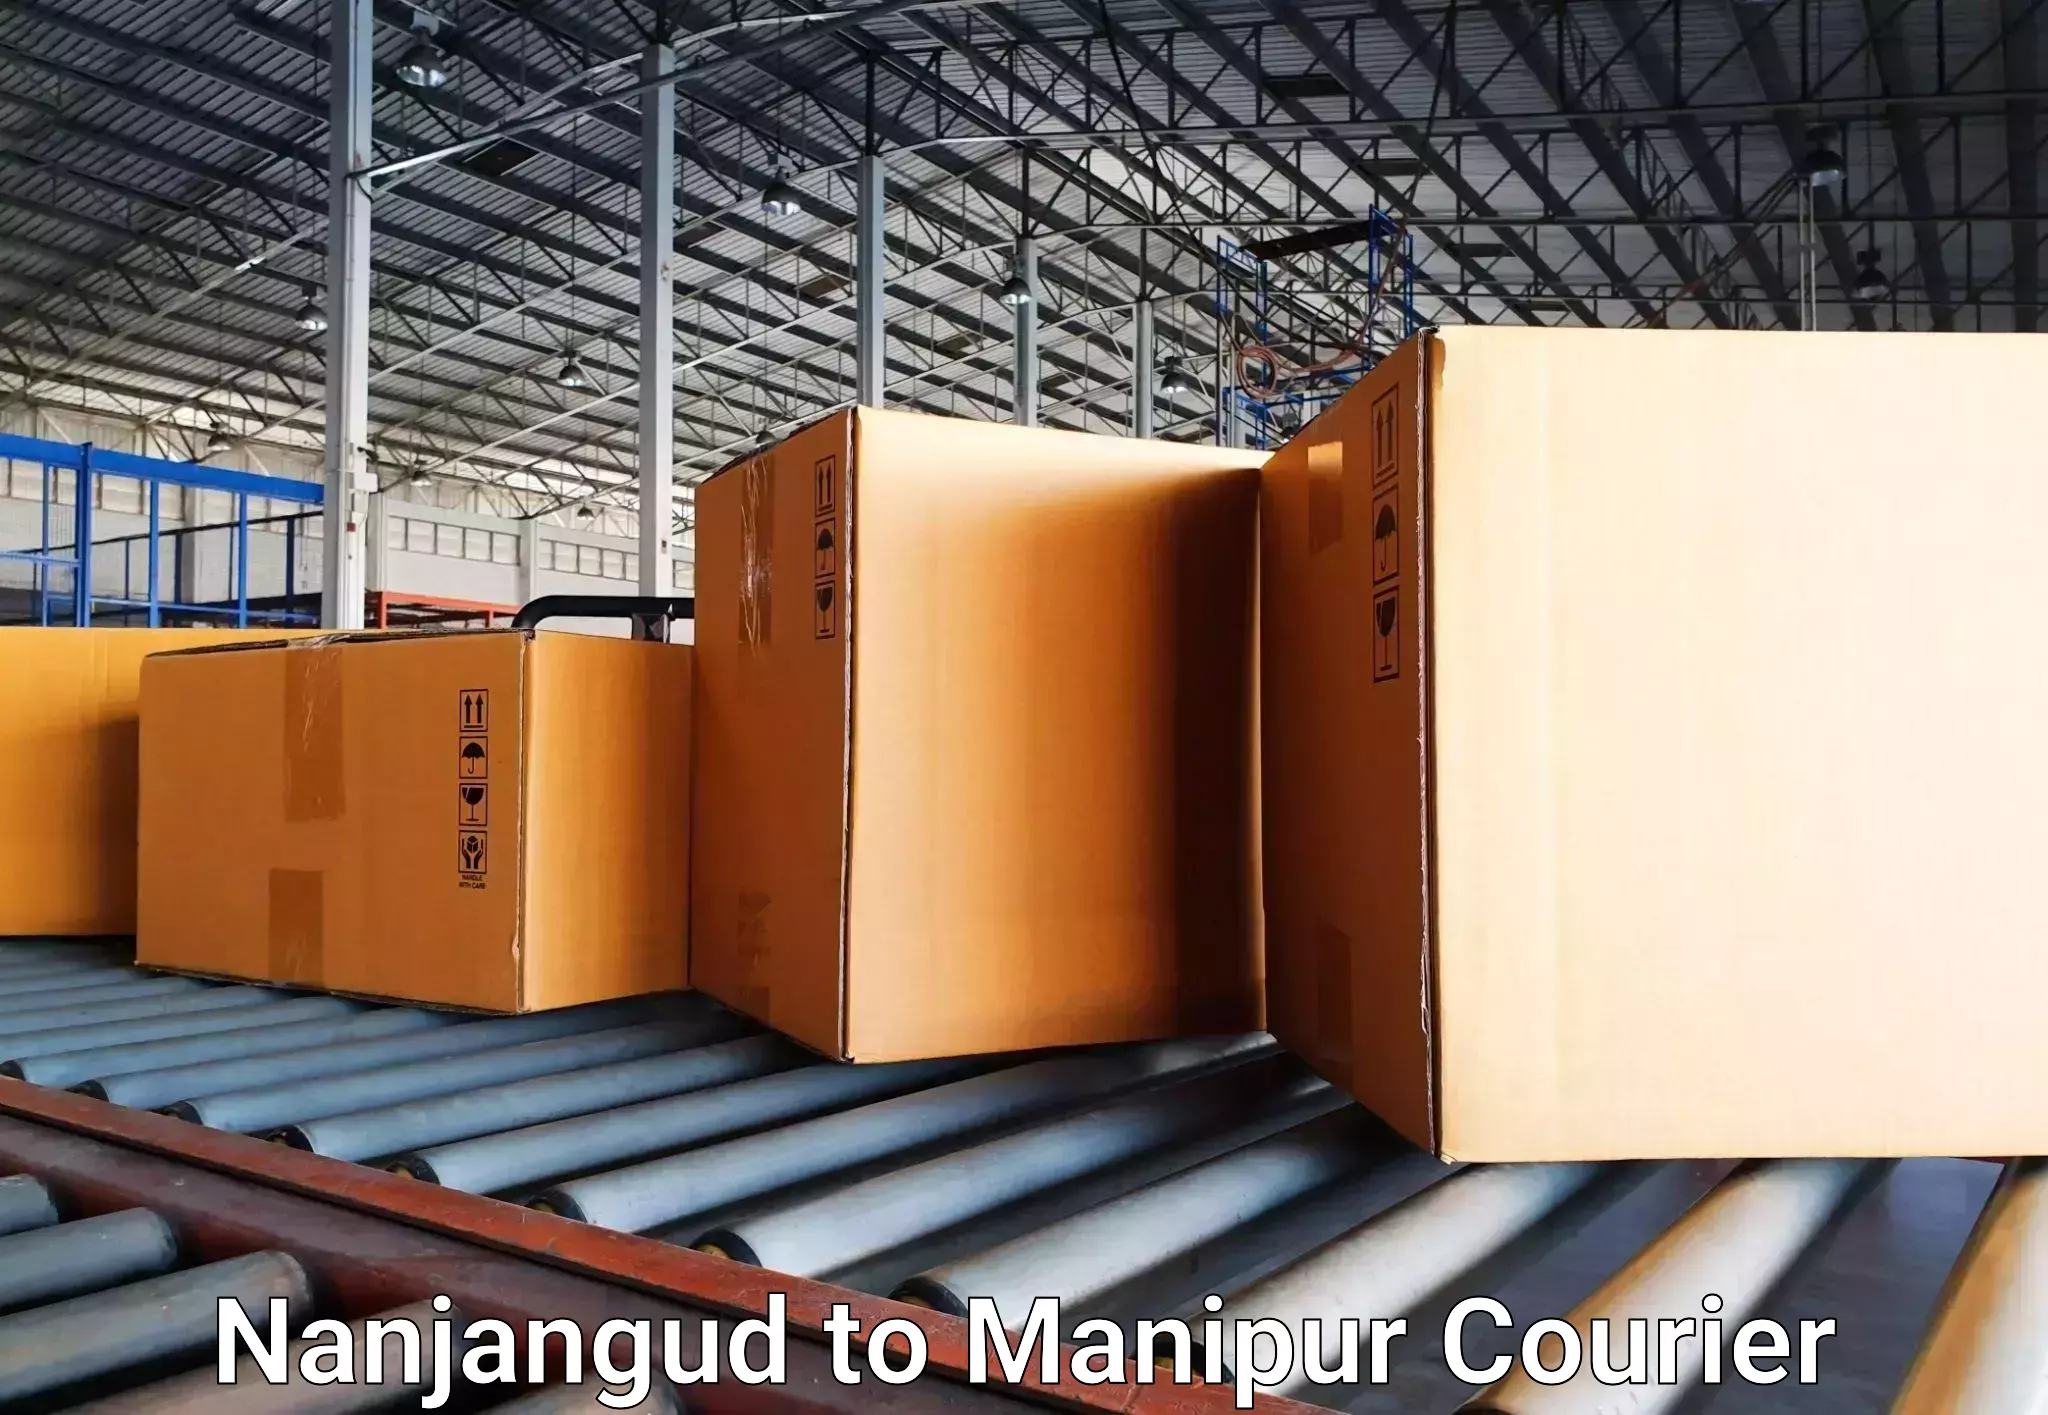 Baggage transport network Nanjangud to Kanti